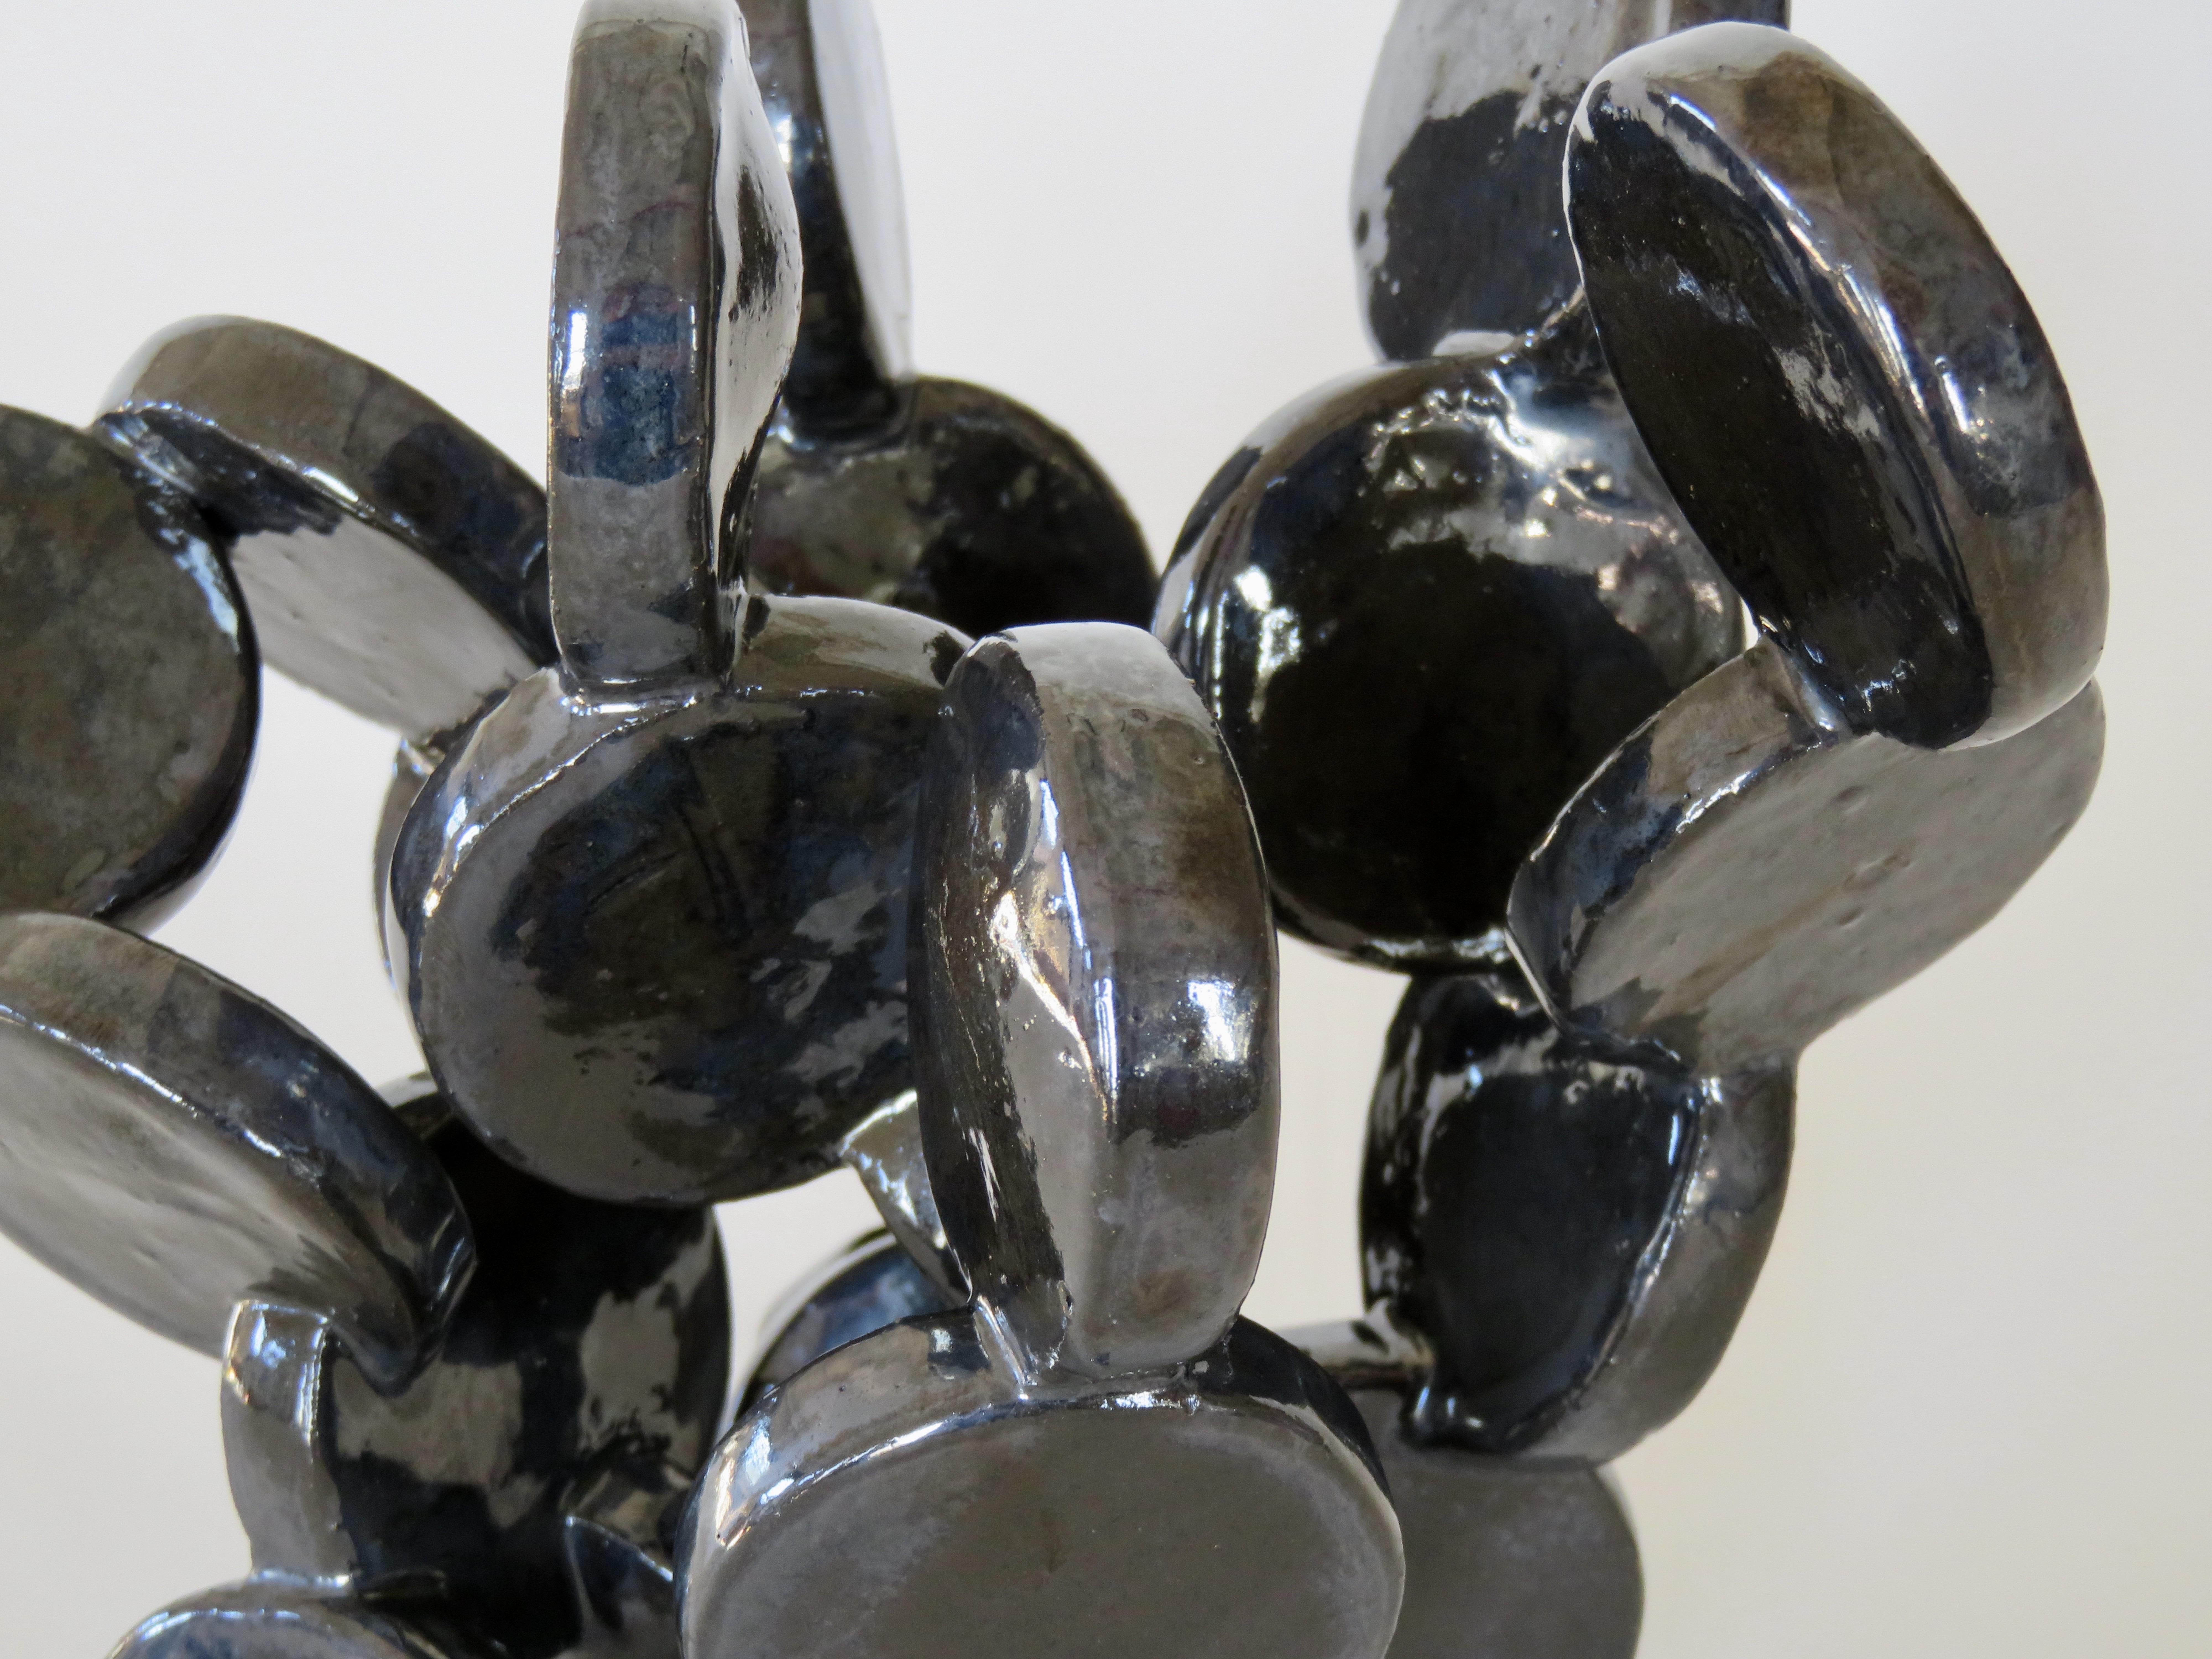 Shiny Black Discs, Handbuilt Abstract Ceramic Sculpture 3